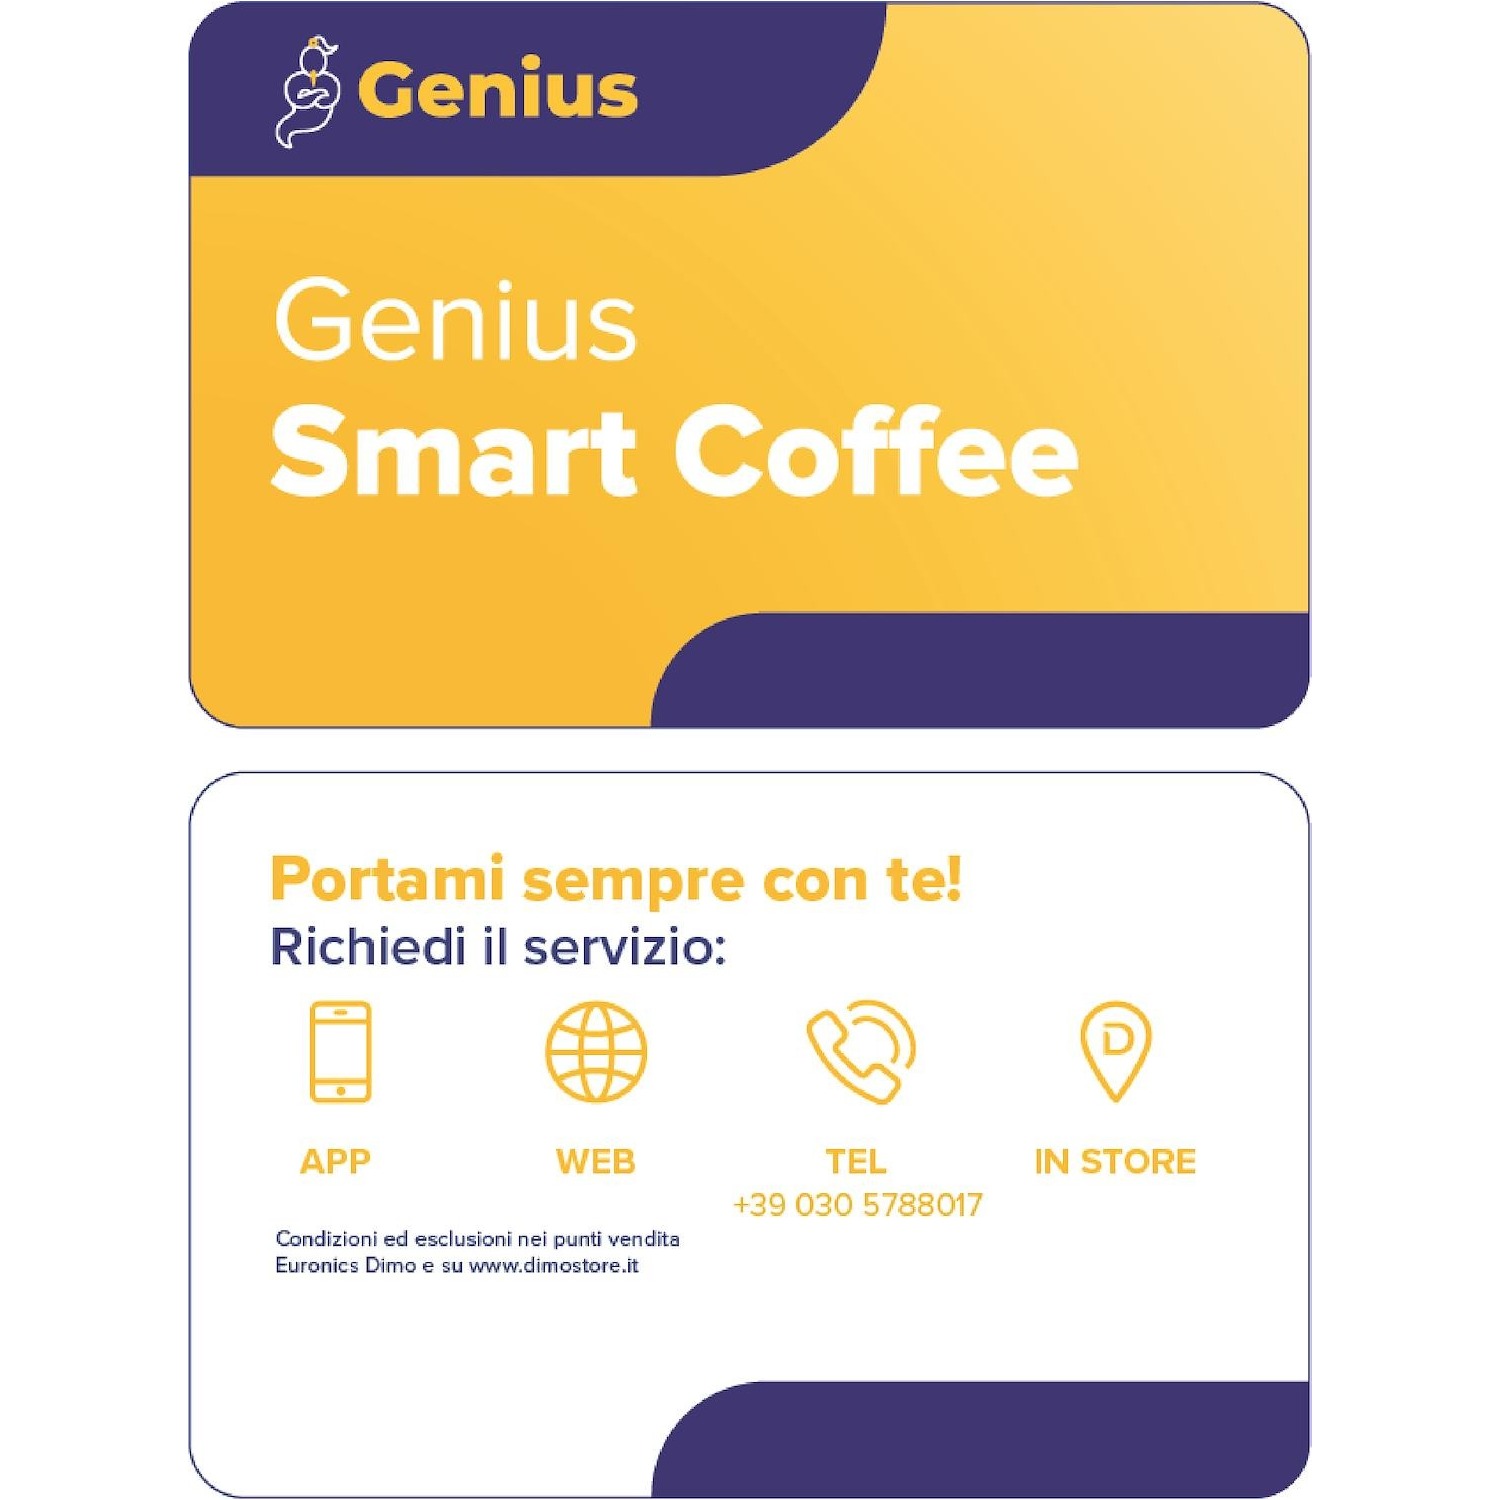 Immagine per Genius Smart Coffee da DIMOStore